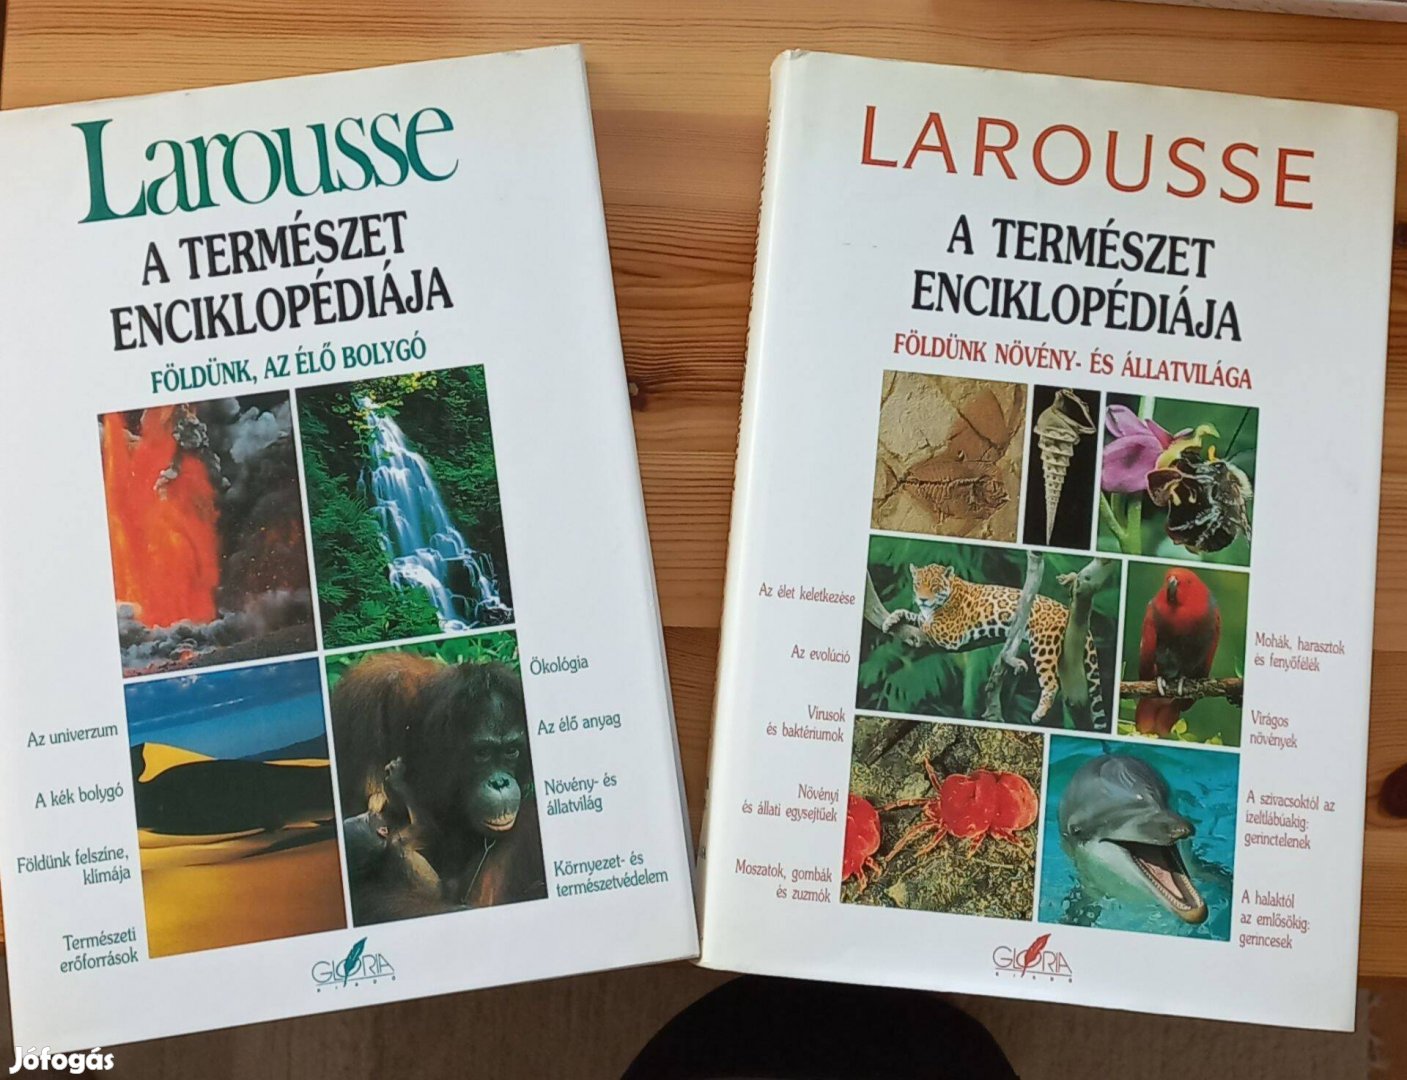 Larousse - A természet enciklopédiája, 2 kötet